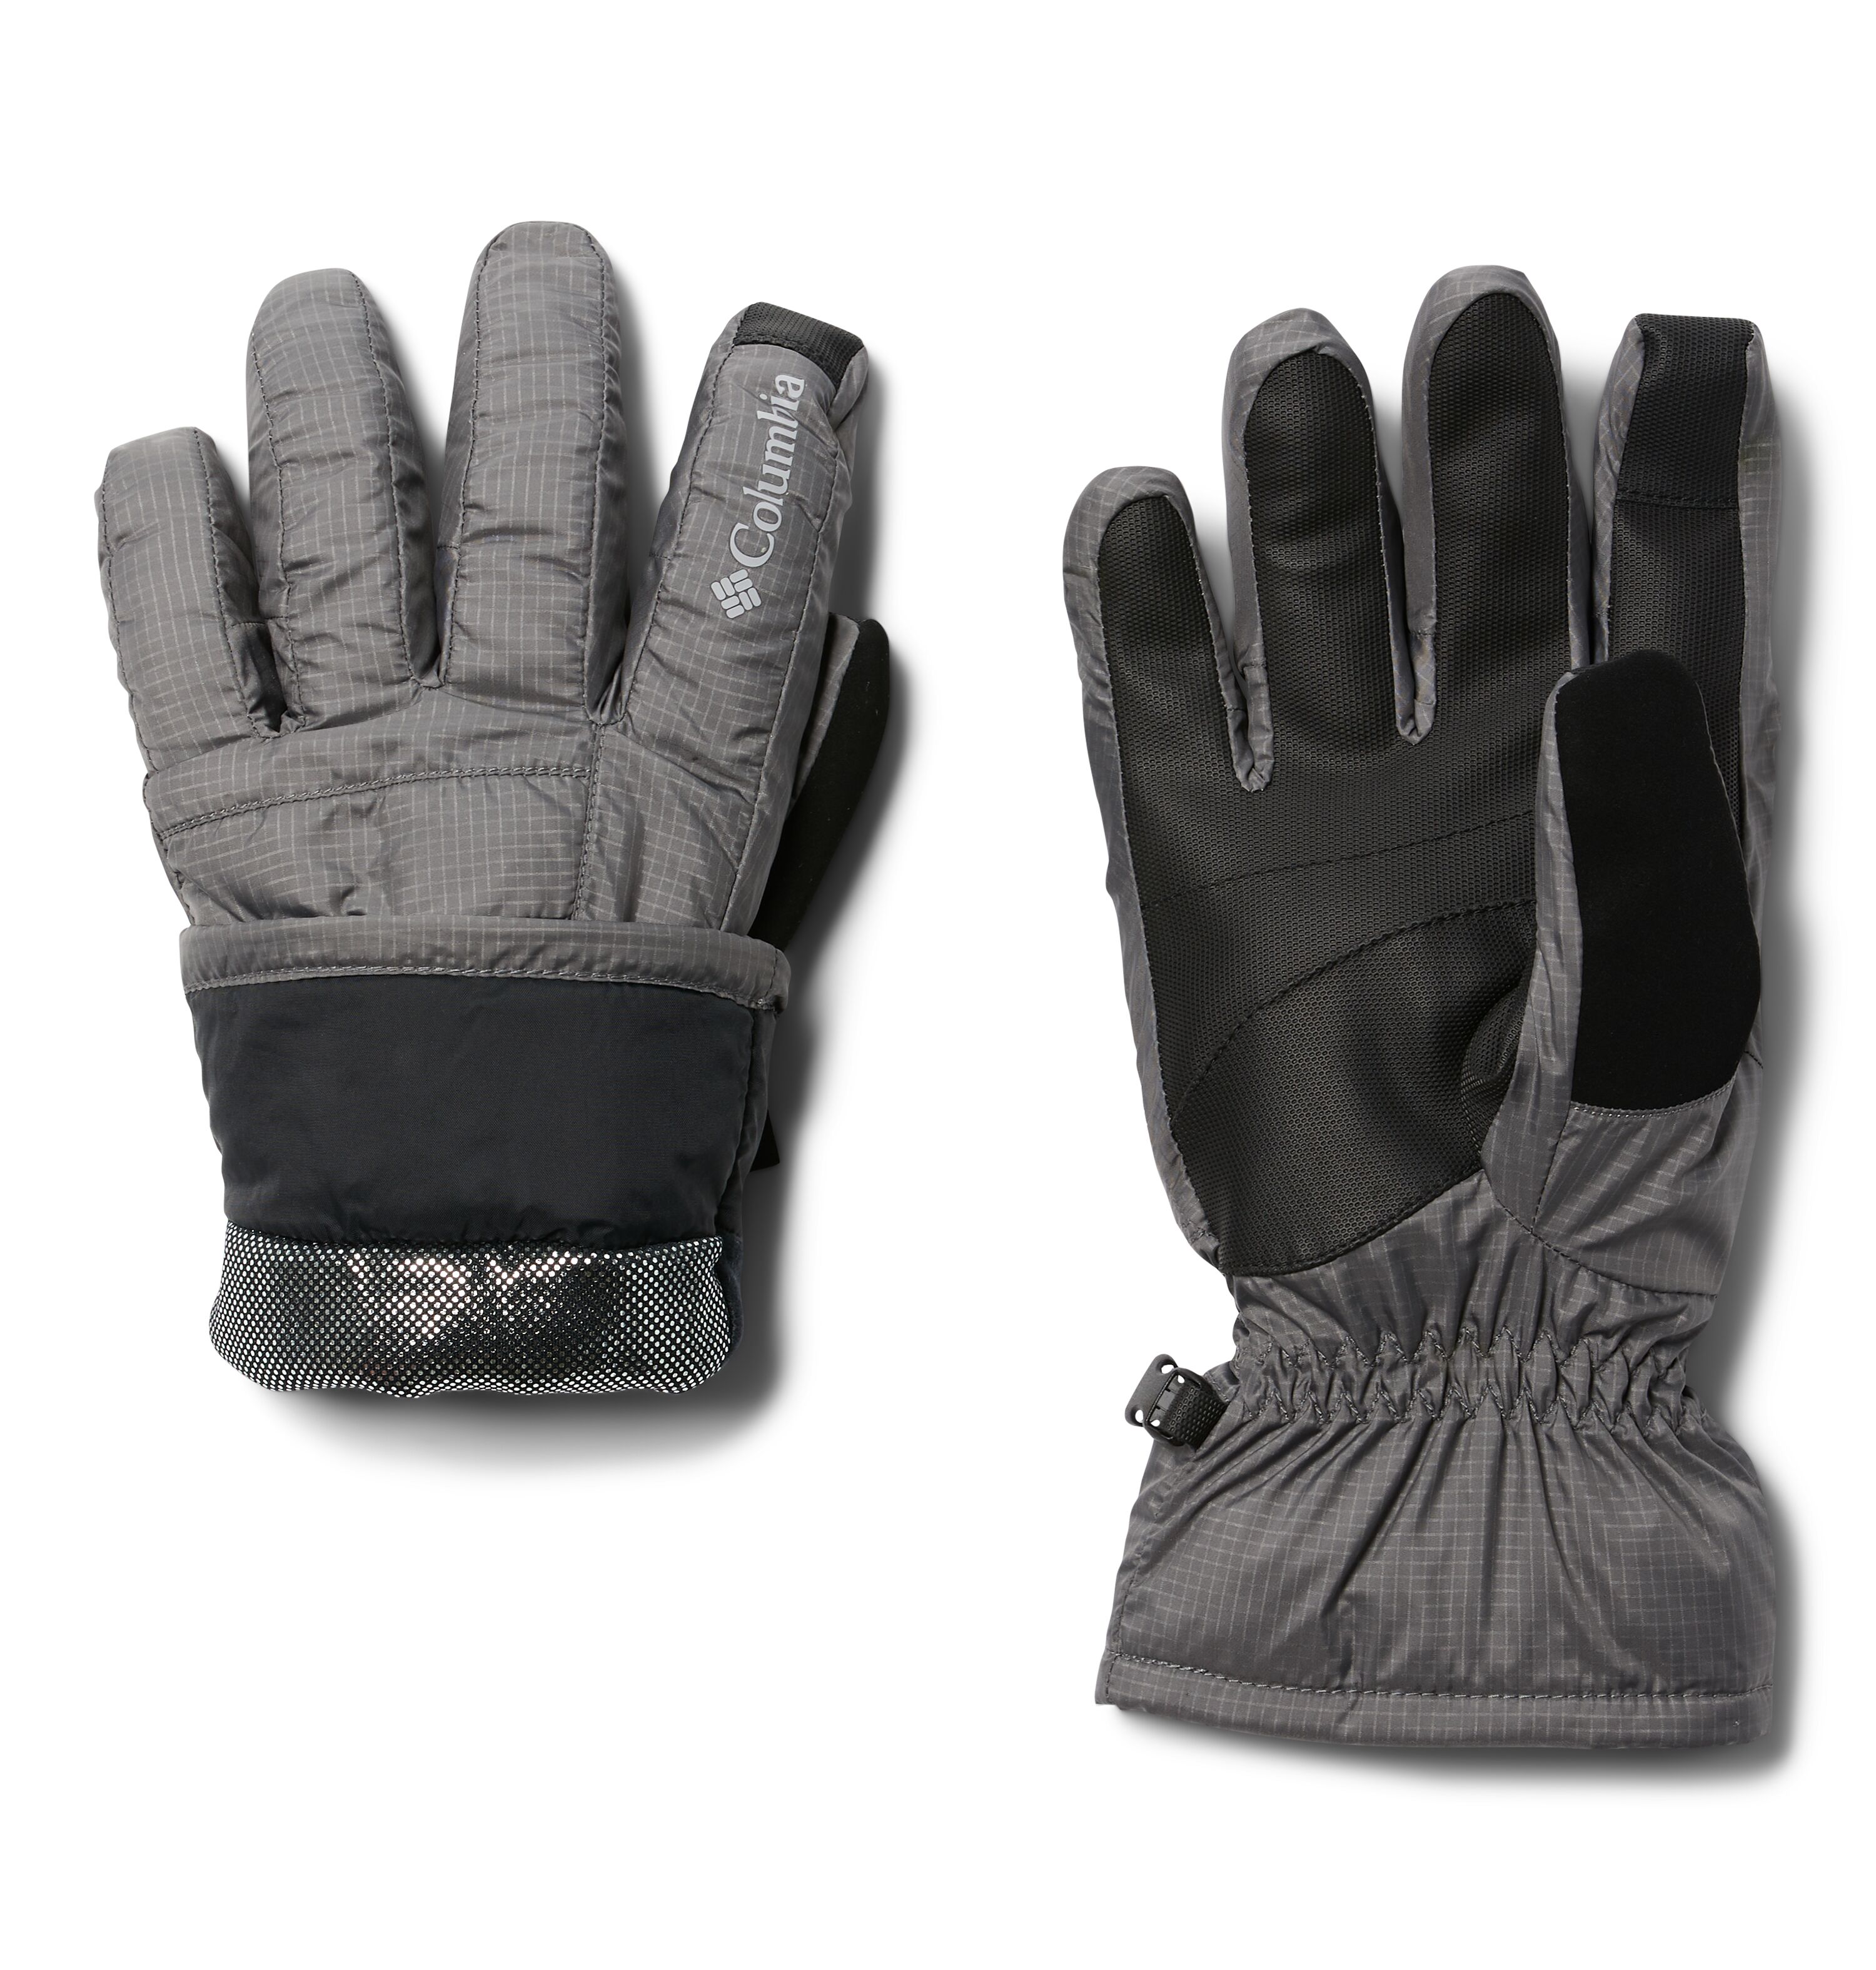 Men's Blizzard Ridge Gloves in City Grey